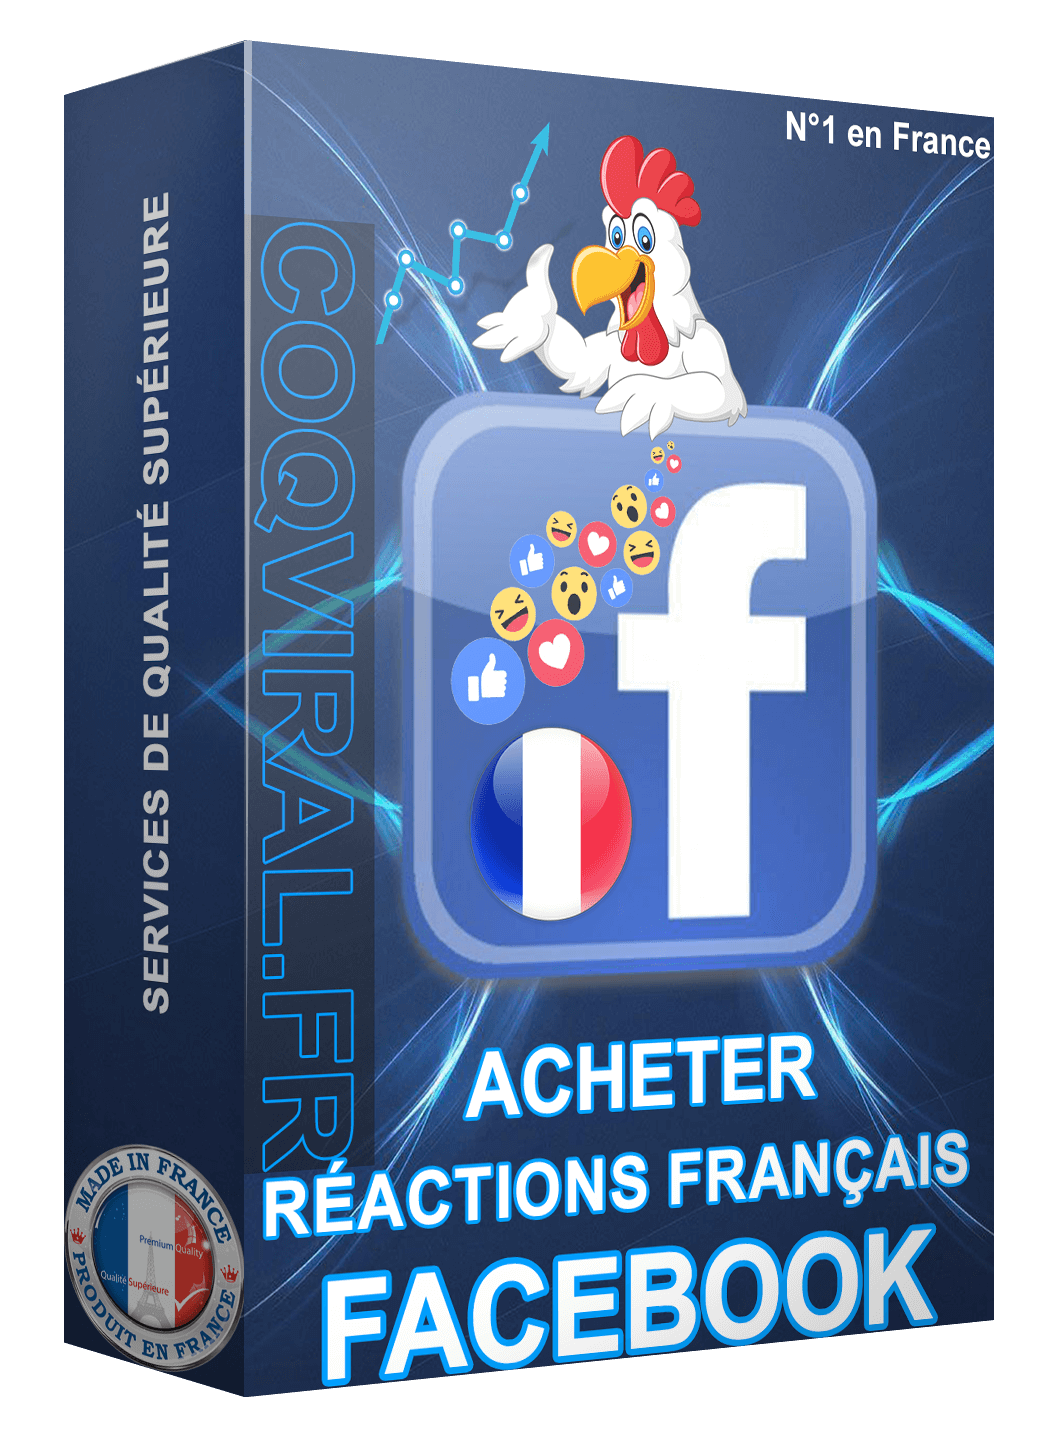 Acheter Réactions Facebook Français (Emoji)